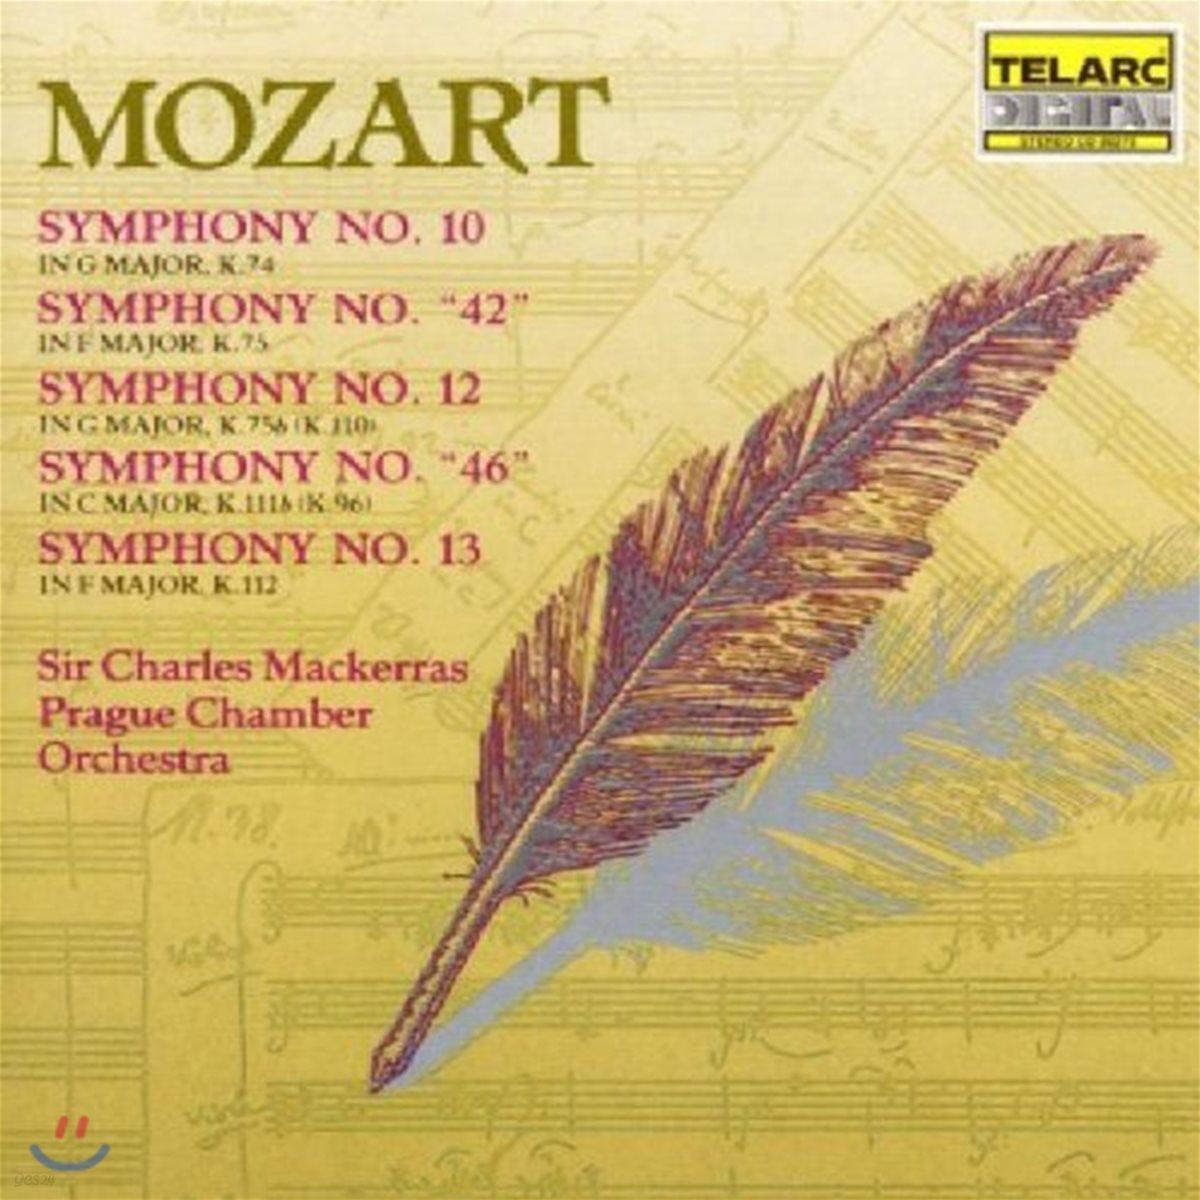 Charles Mackerras 모차르트: 교향곡 10, 46, 42, 12, 13번 (Mozart: Symphonies K.74, 75, 75b, 111b & 112)